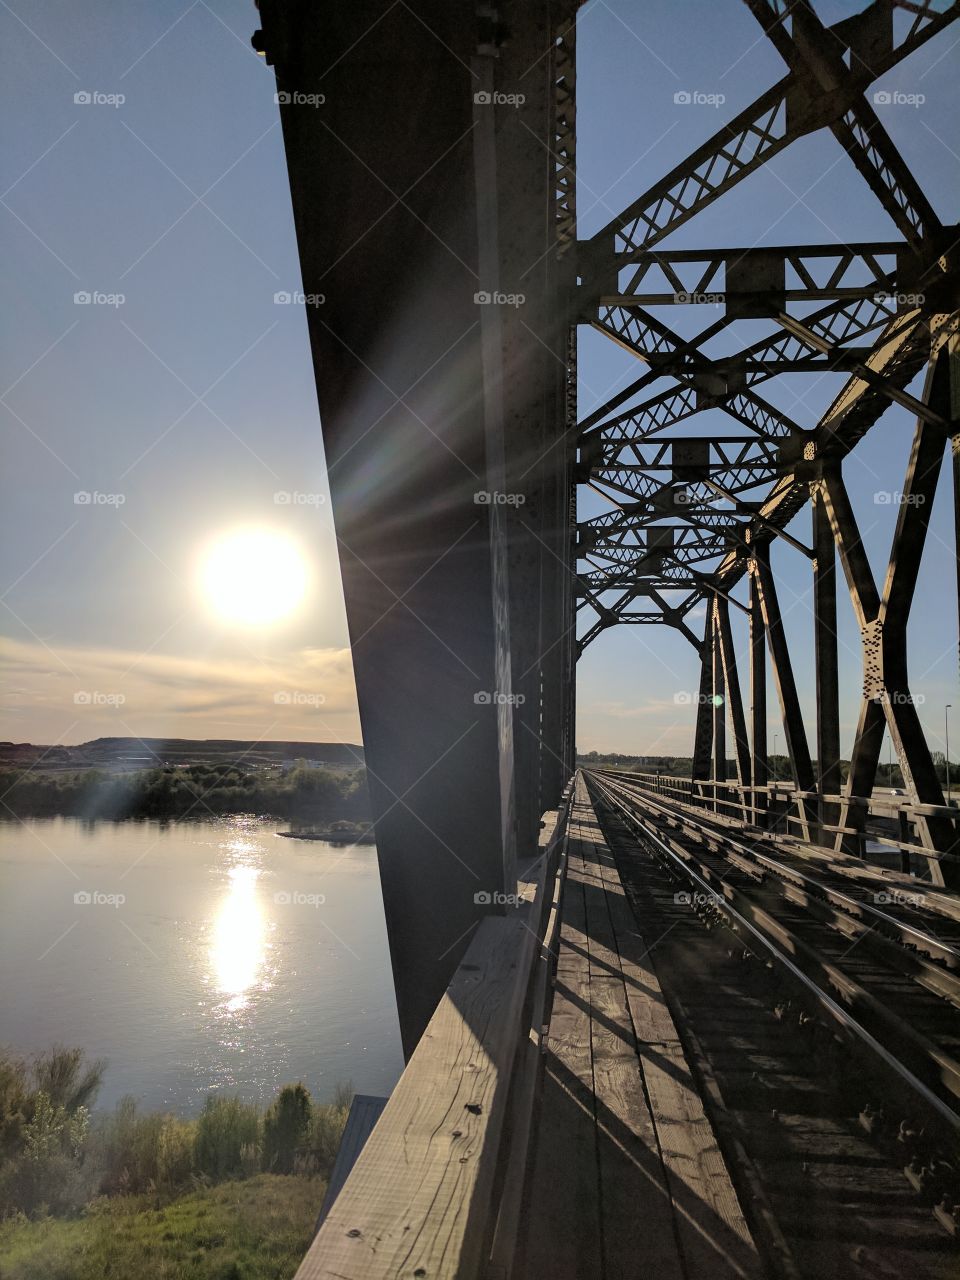 Sunset on a train bridge in Saskatoon